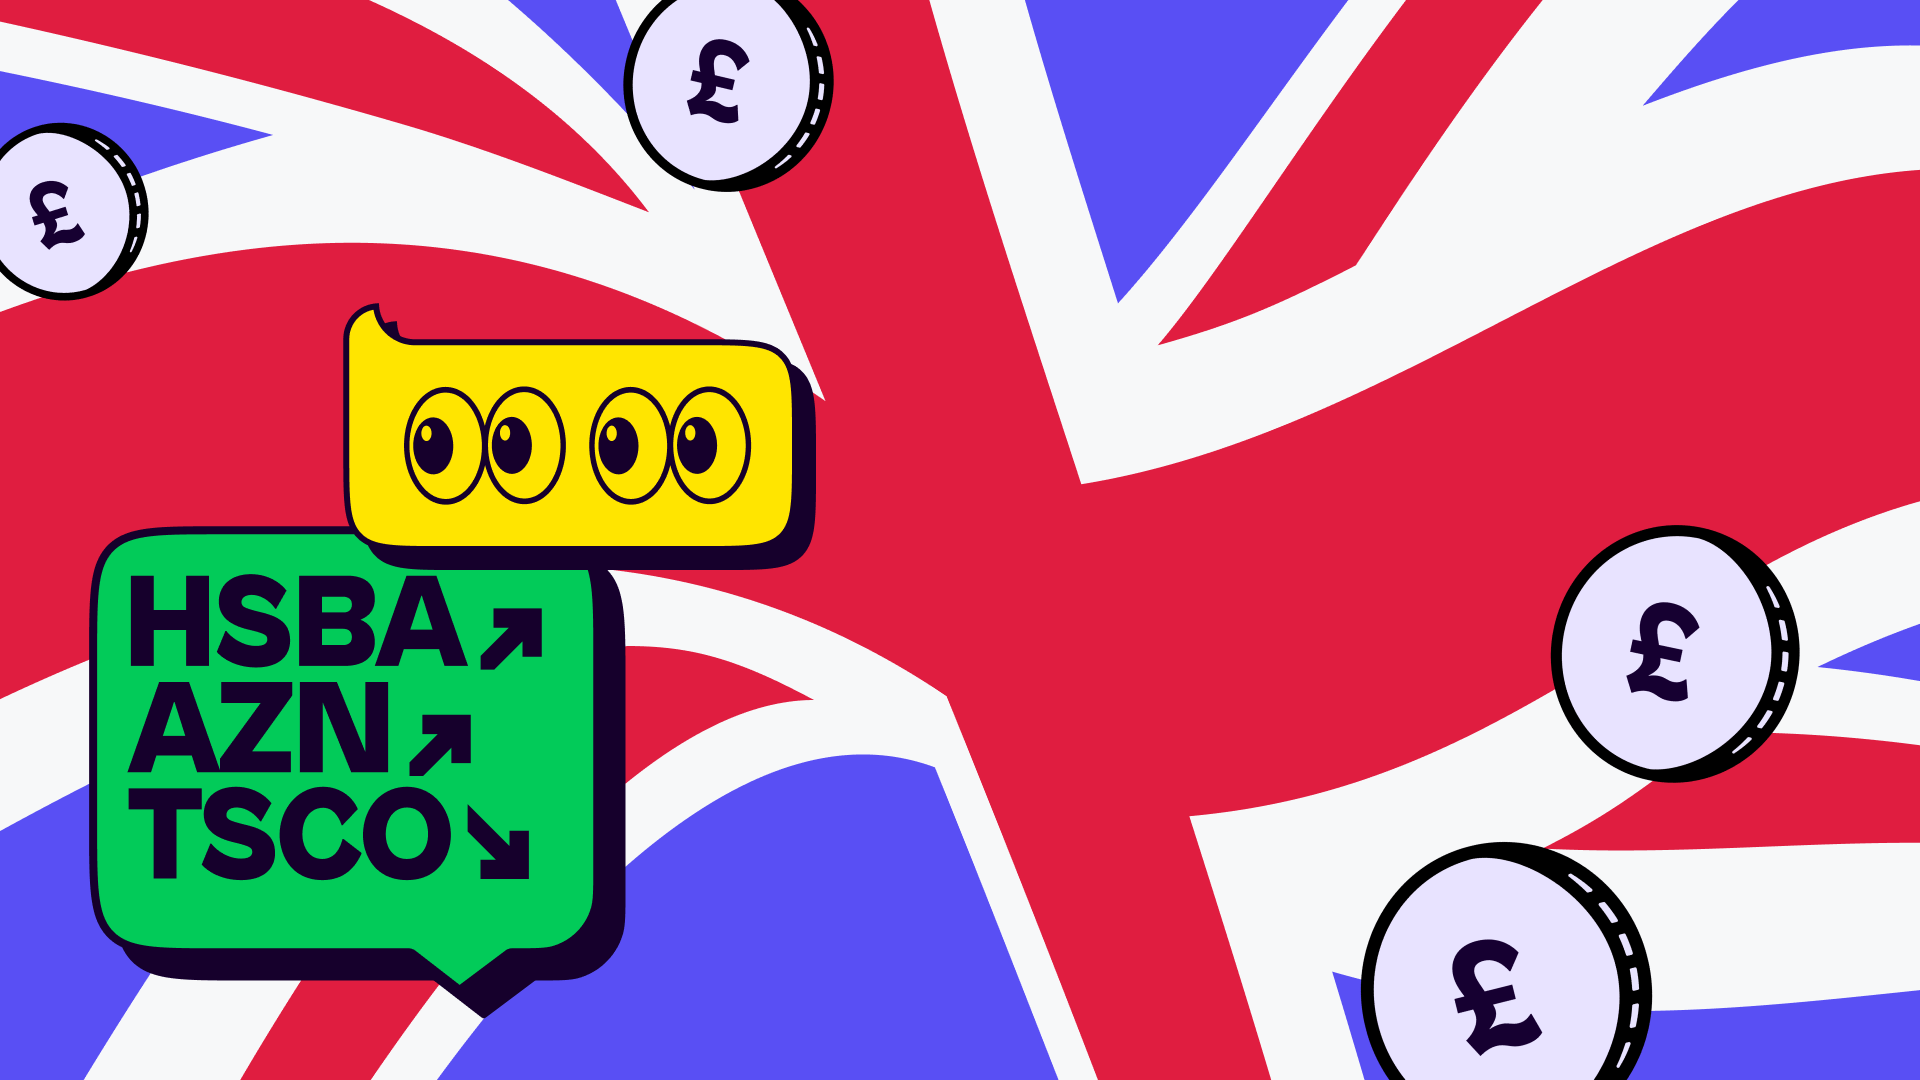 A United Kingdom stock market graphic